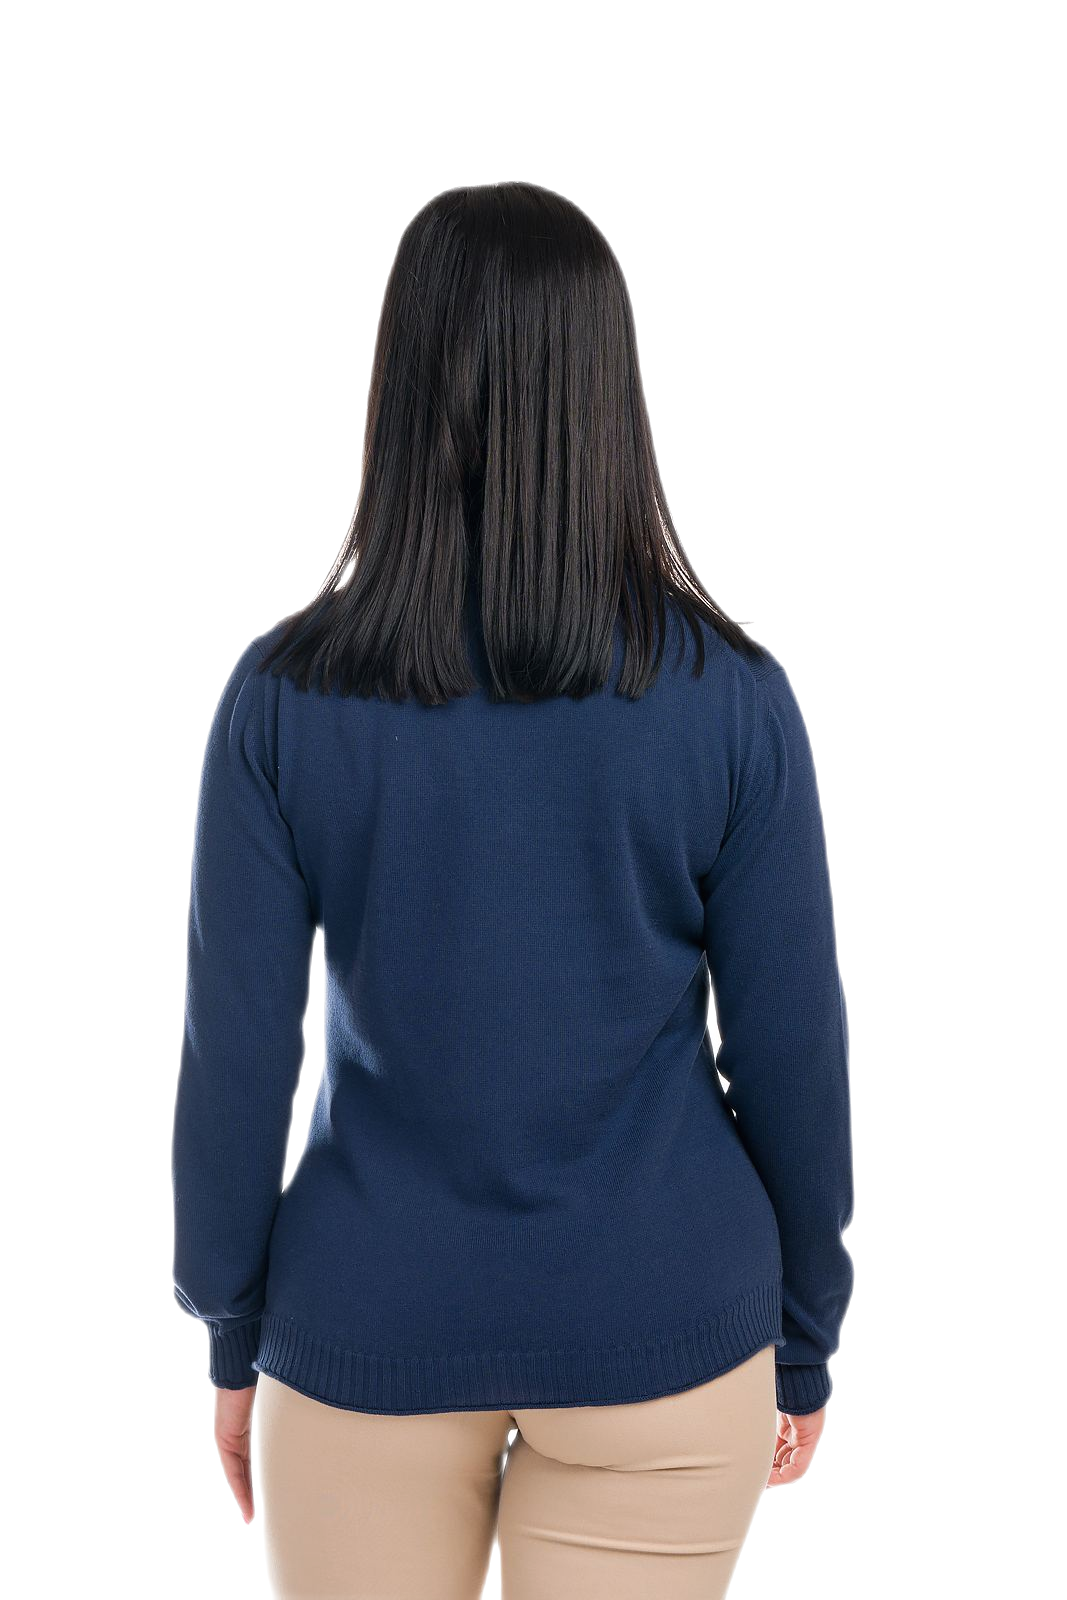 retro maglia donna leggera manica lunga blu